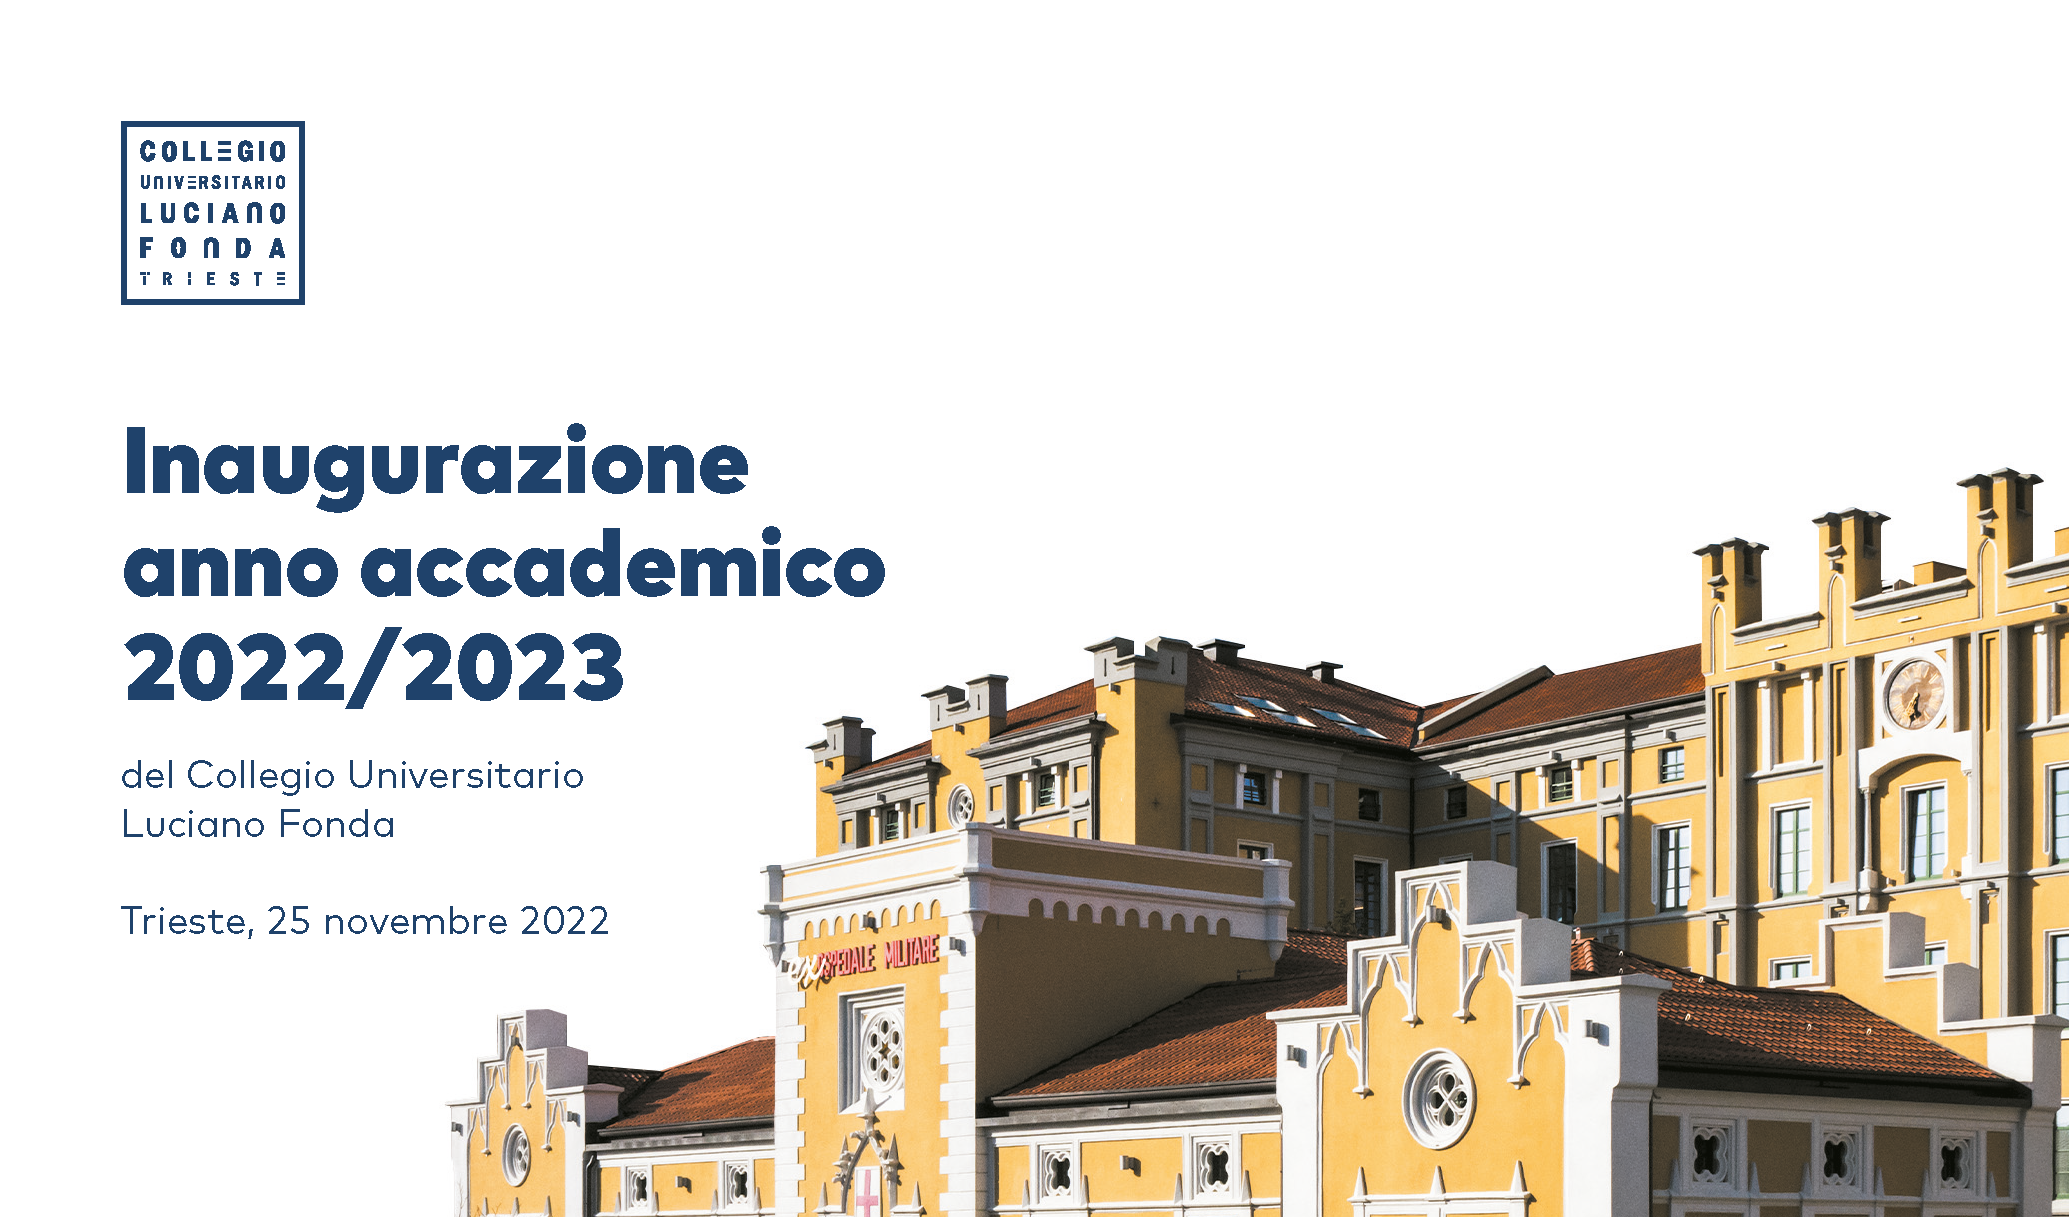 INAUGURAZIONE ANNO ACCADEMICO 2022/23 del Collegio Universitario Luciano Fonda – Venerdì, 25 novembre 2022